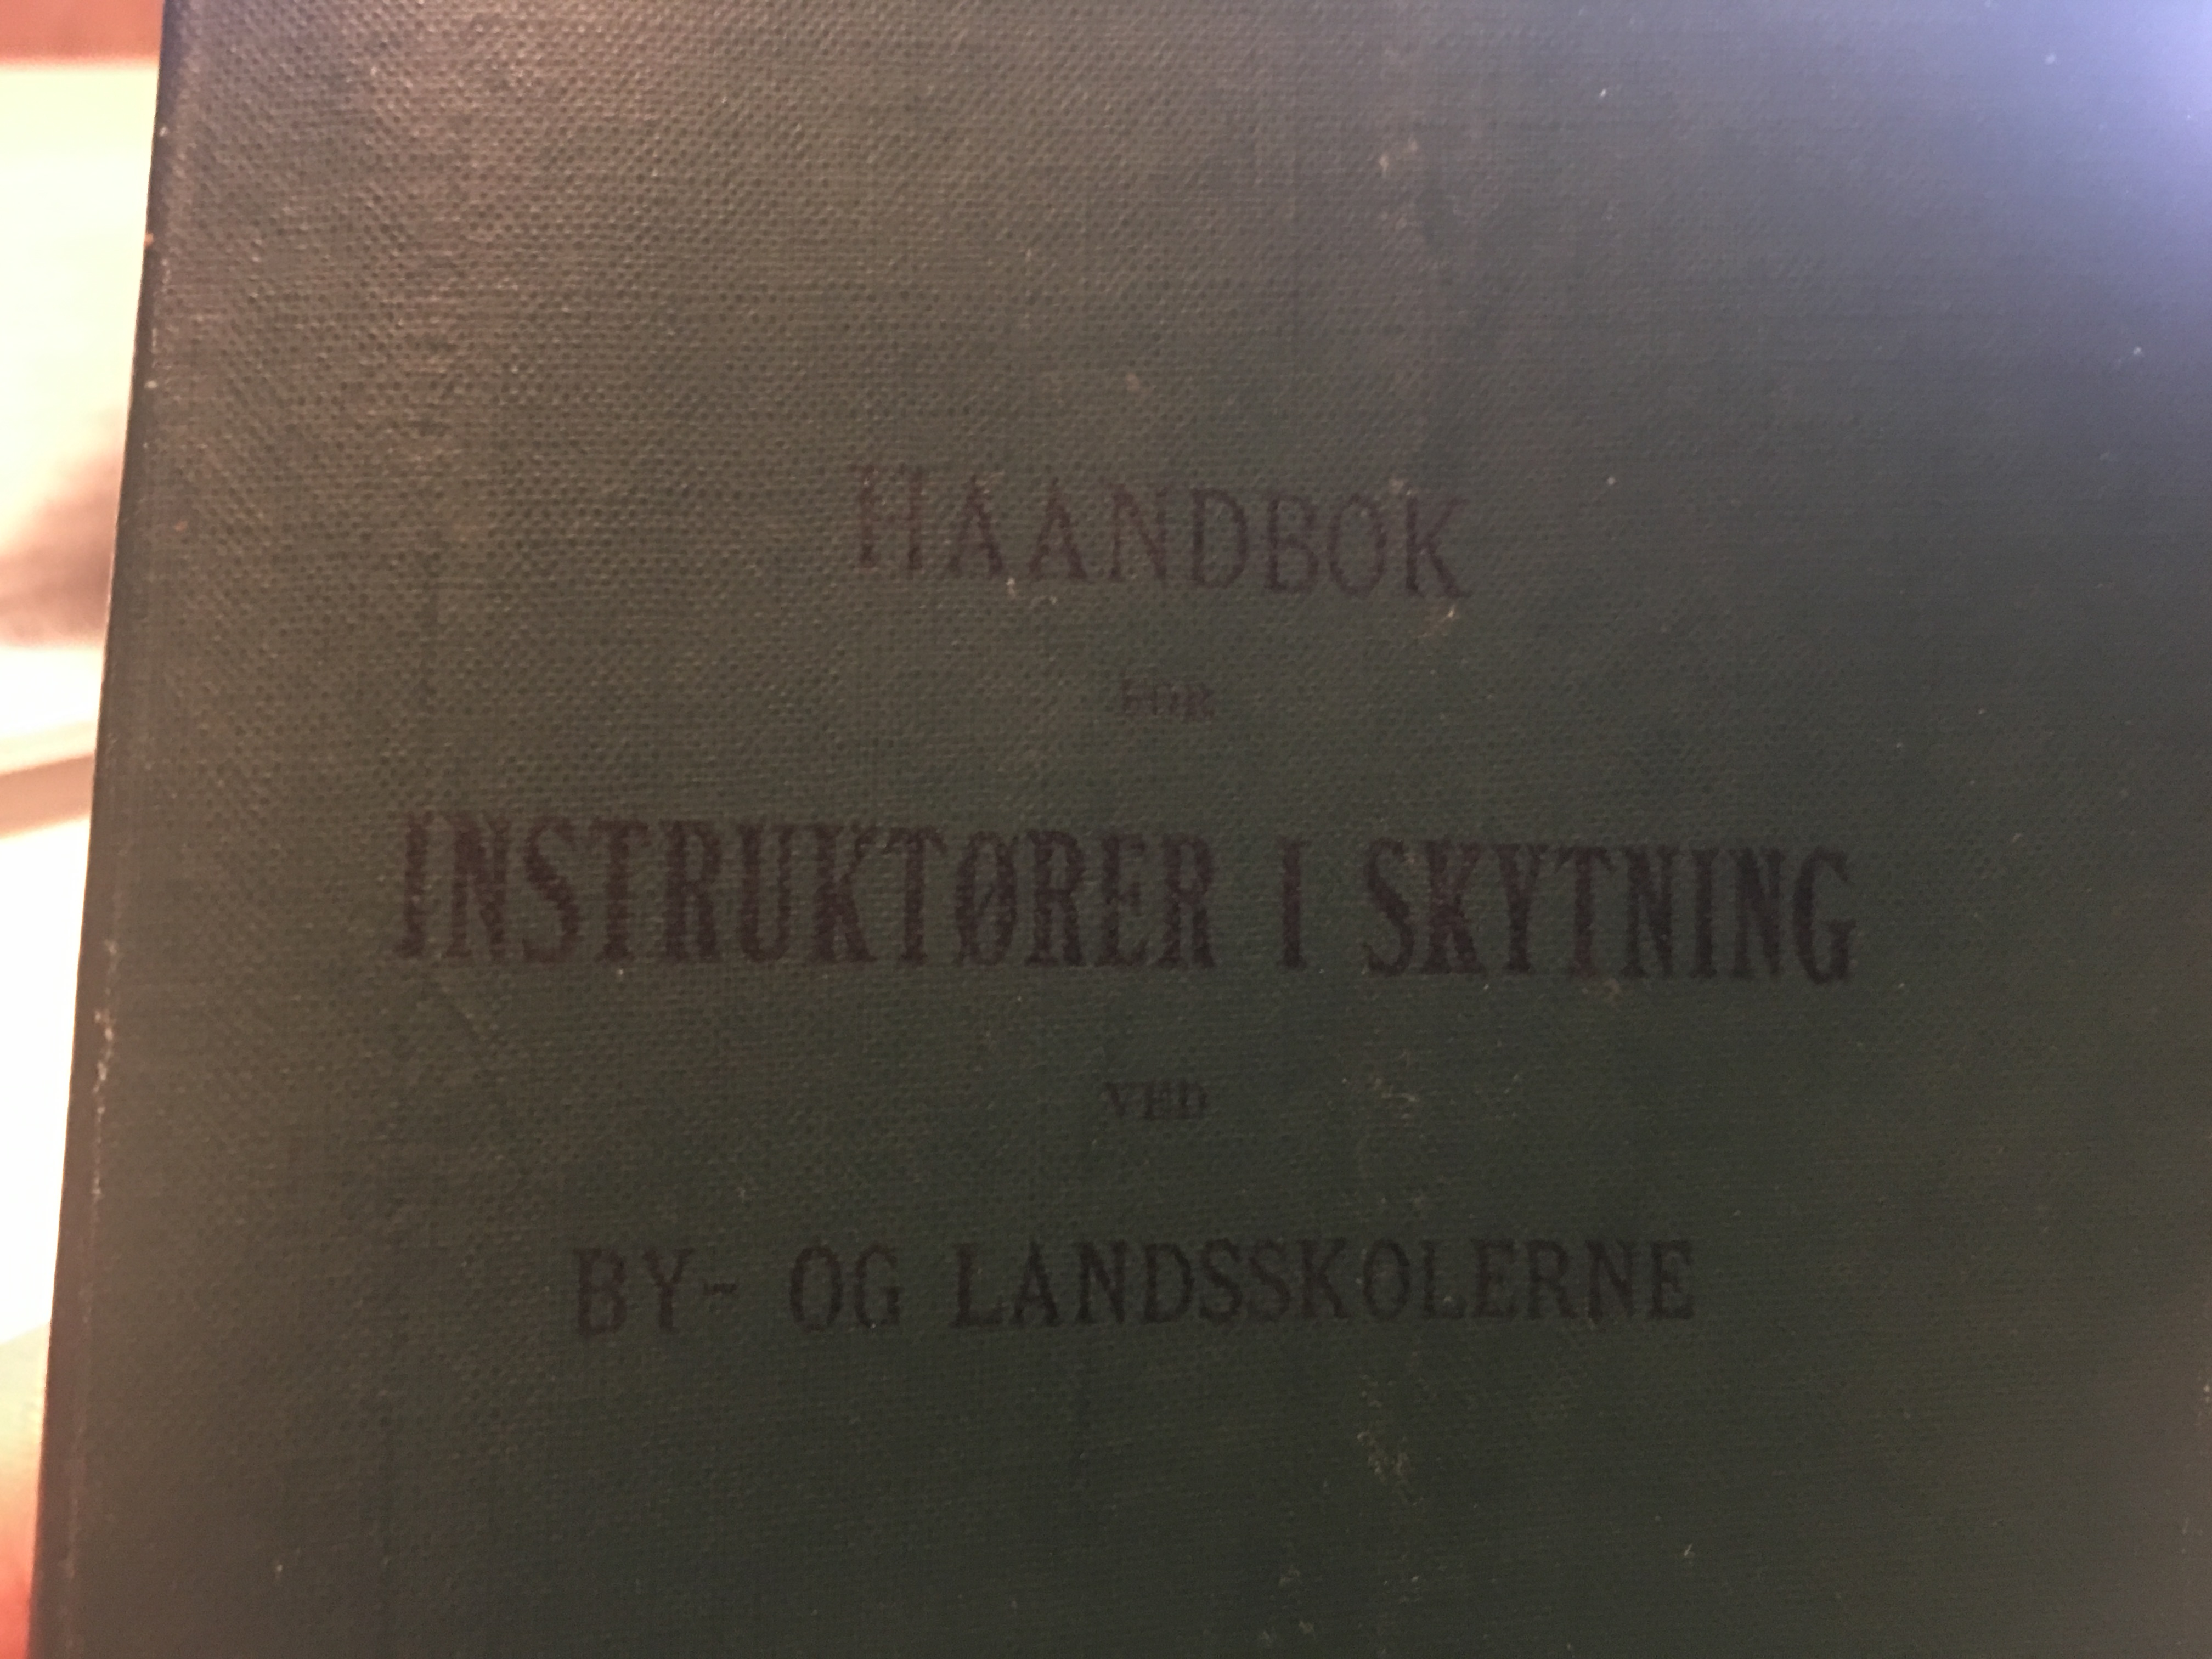 ./guns/utstyr/bilder/Utstyr-Skoleskyting-Haandbok-Instruktor-1908-2.jpg